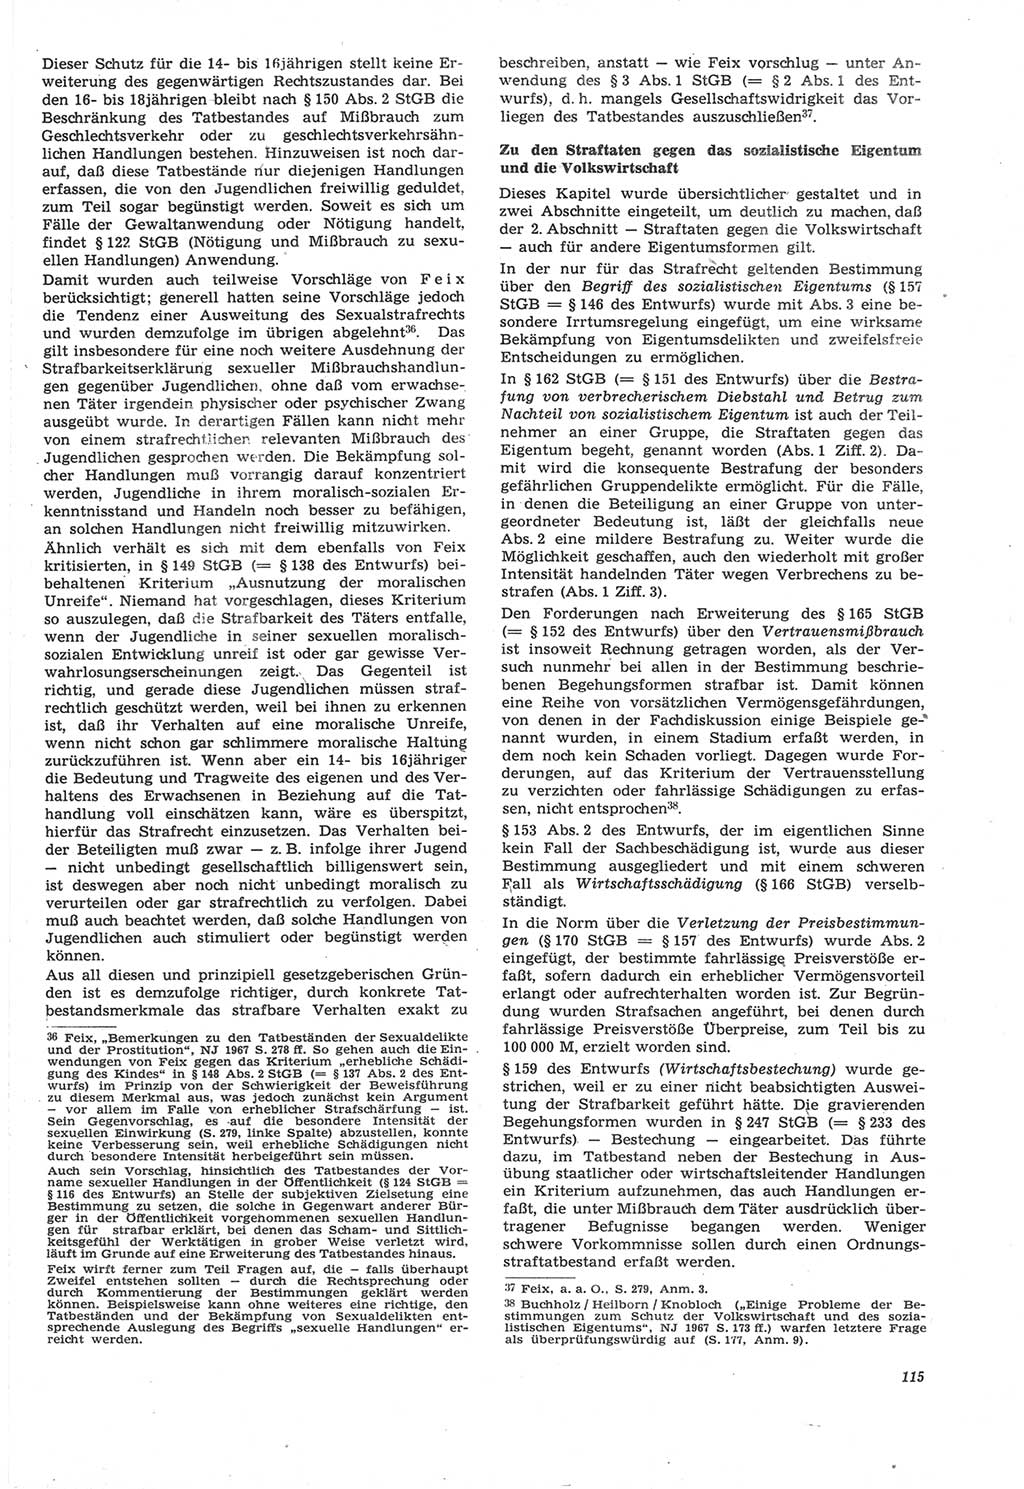 Neue Justiz (NJ), Zeitschrift für Recht und Rechtswissenschaft [Deutsche Demokratische Republik (DDR)], 22. Jahrgang 1968, Seite 115 (NJ DDR 1968, S. 115)